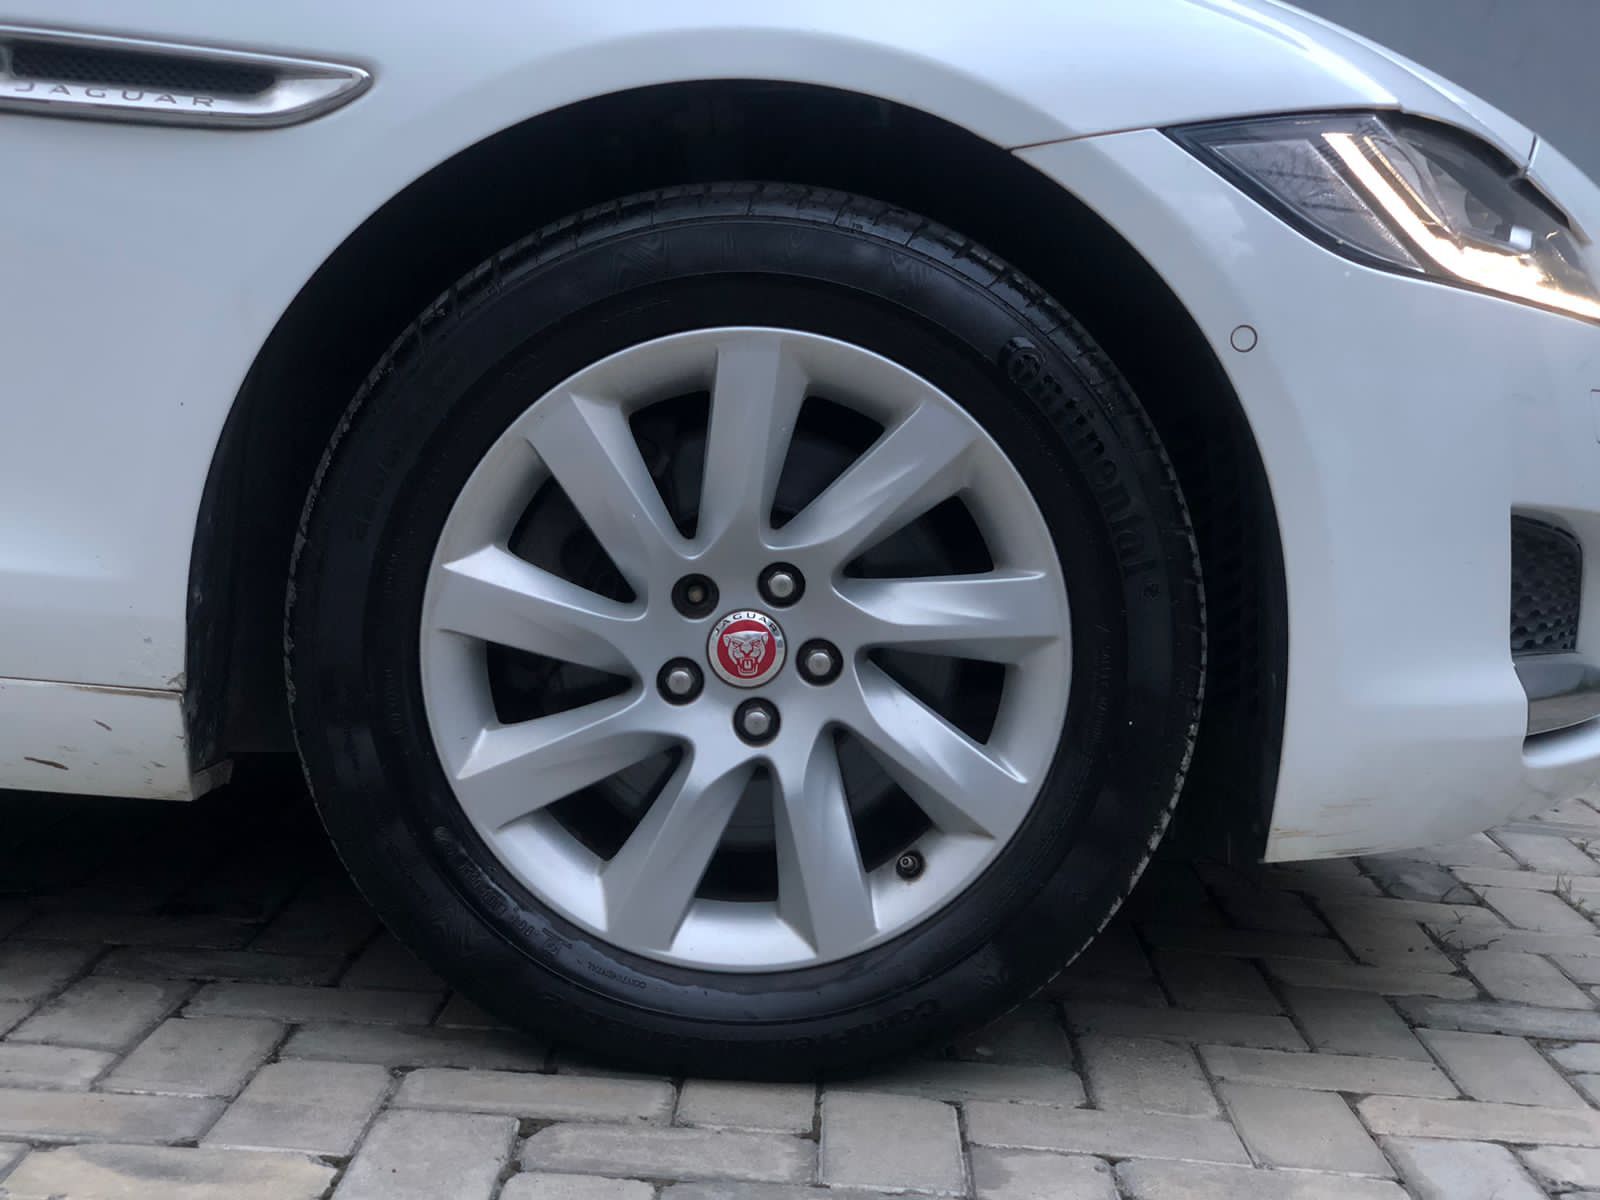 Jaguar XF - 2018 model - 57283 kms wheel